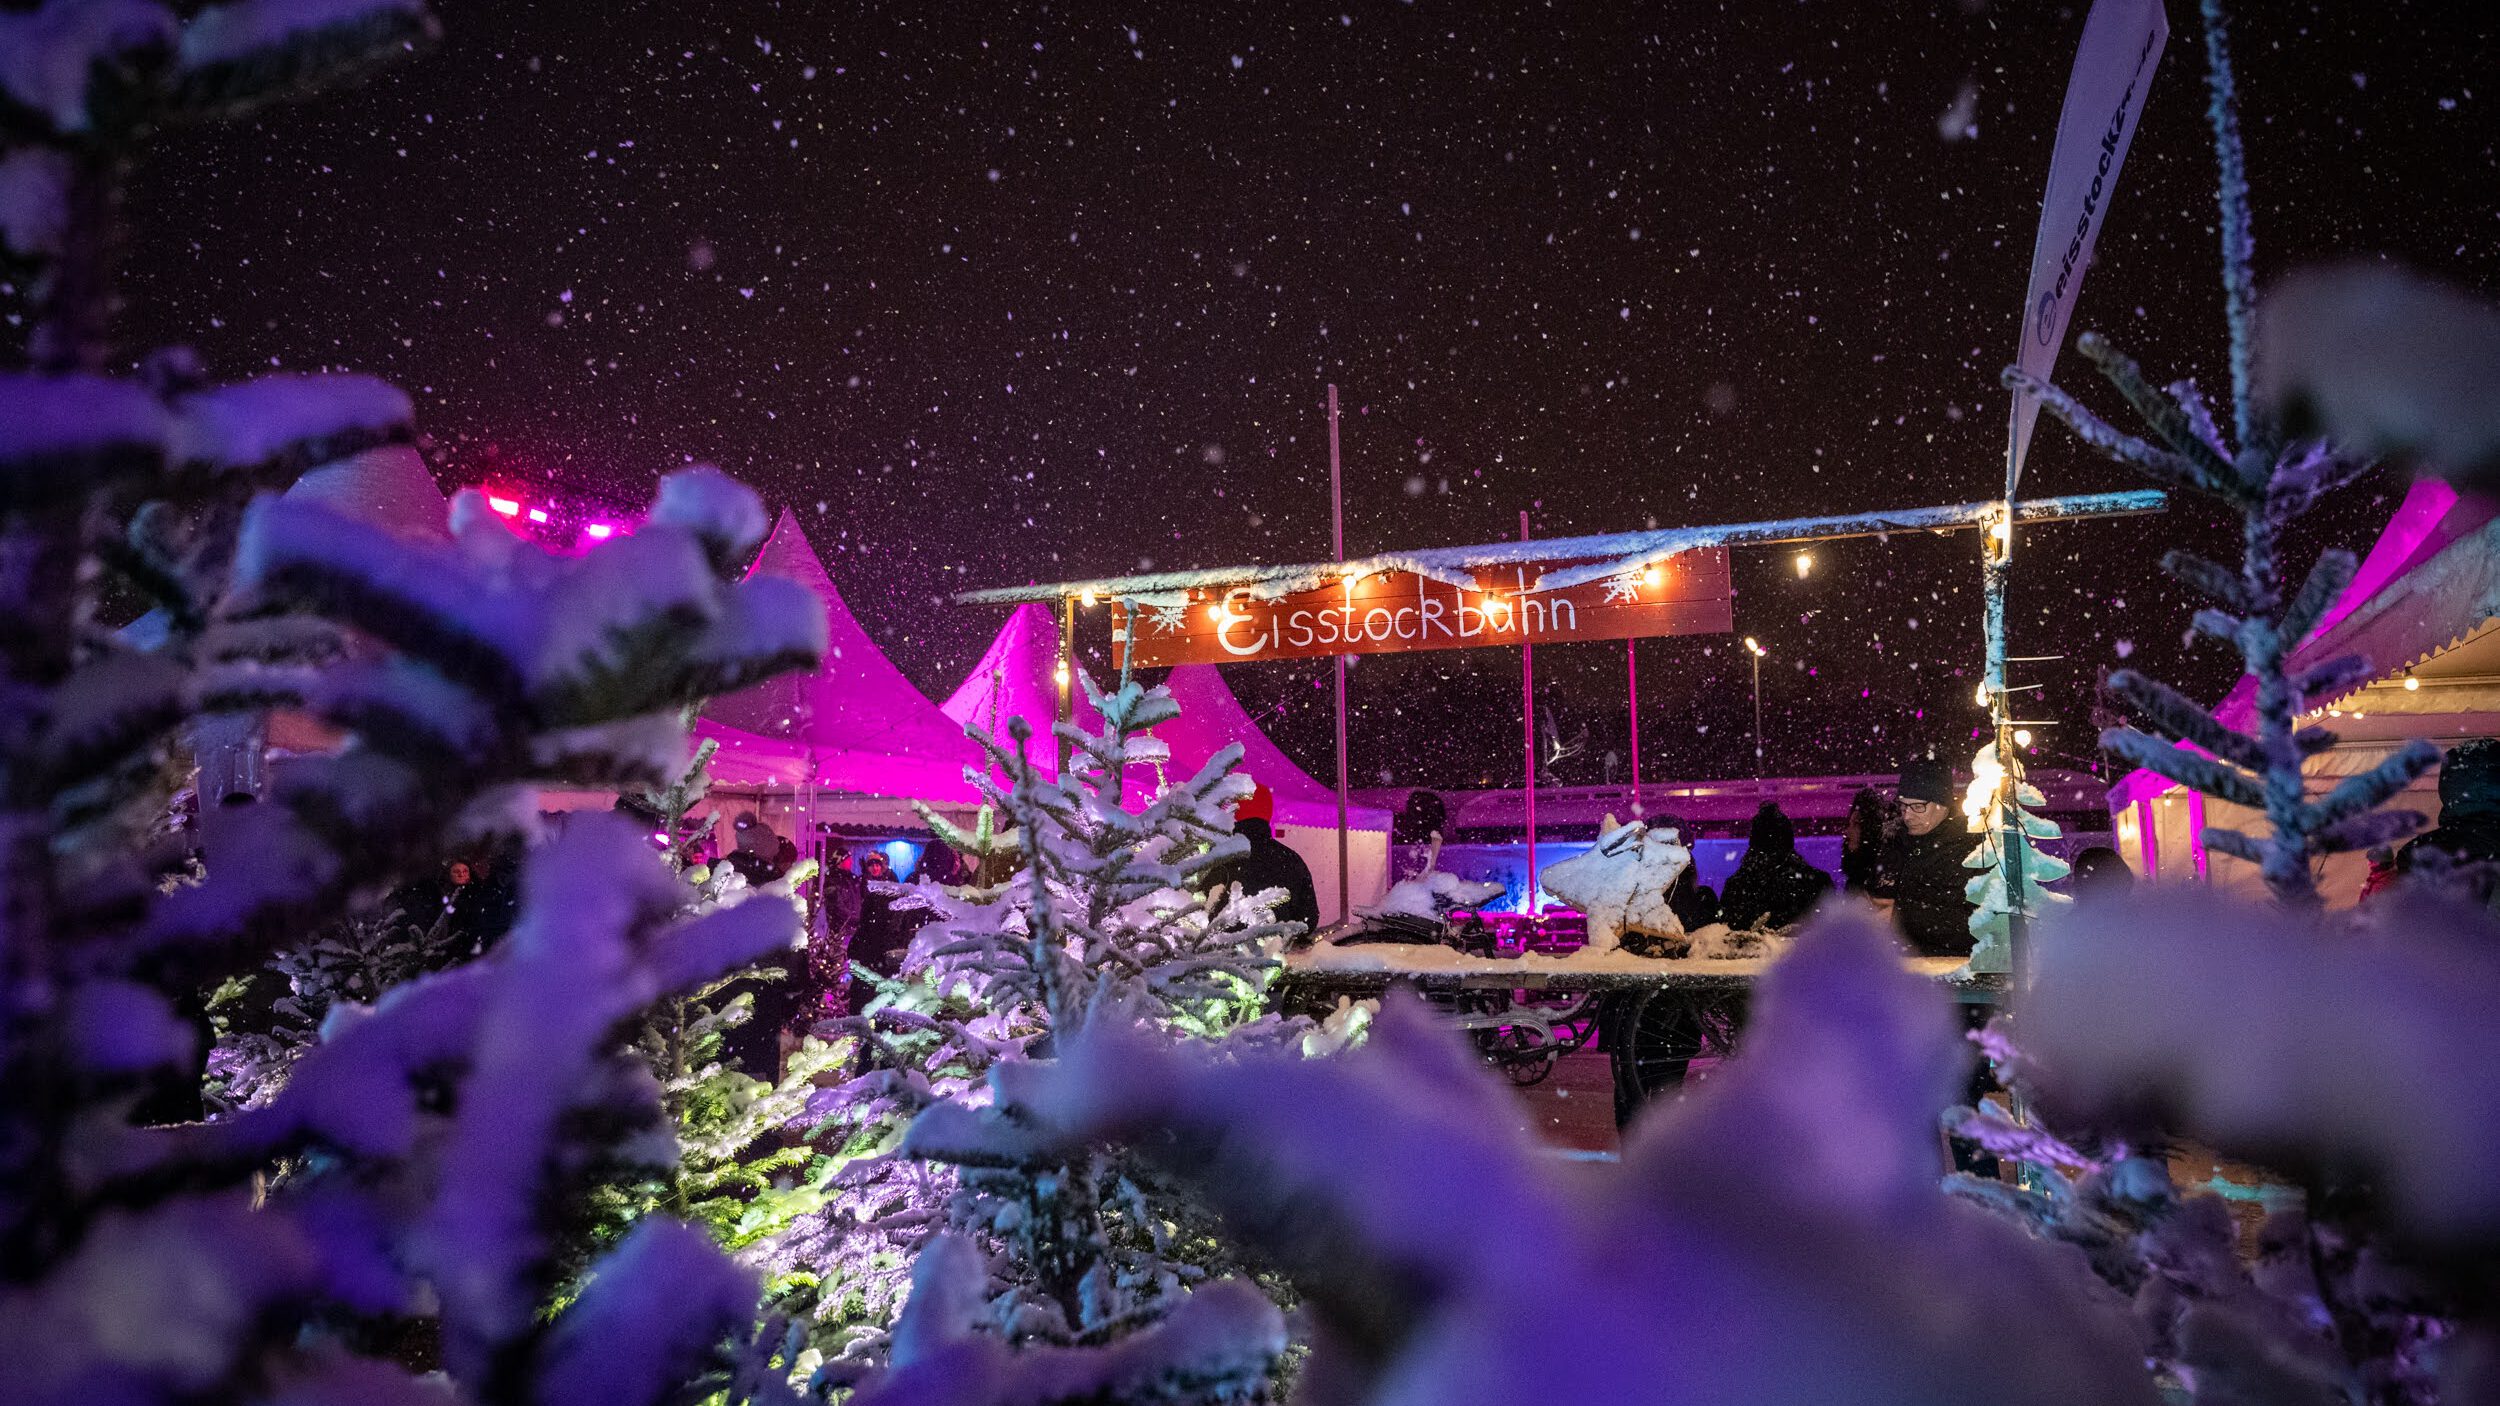 Eisstockschießen als Weihnachtsfeier ist Trend. Das Bild zeigt die Eisstockbahn auf dem Tollwood Winterfestival 2022 im Schneetreiben bei Nacht.